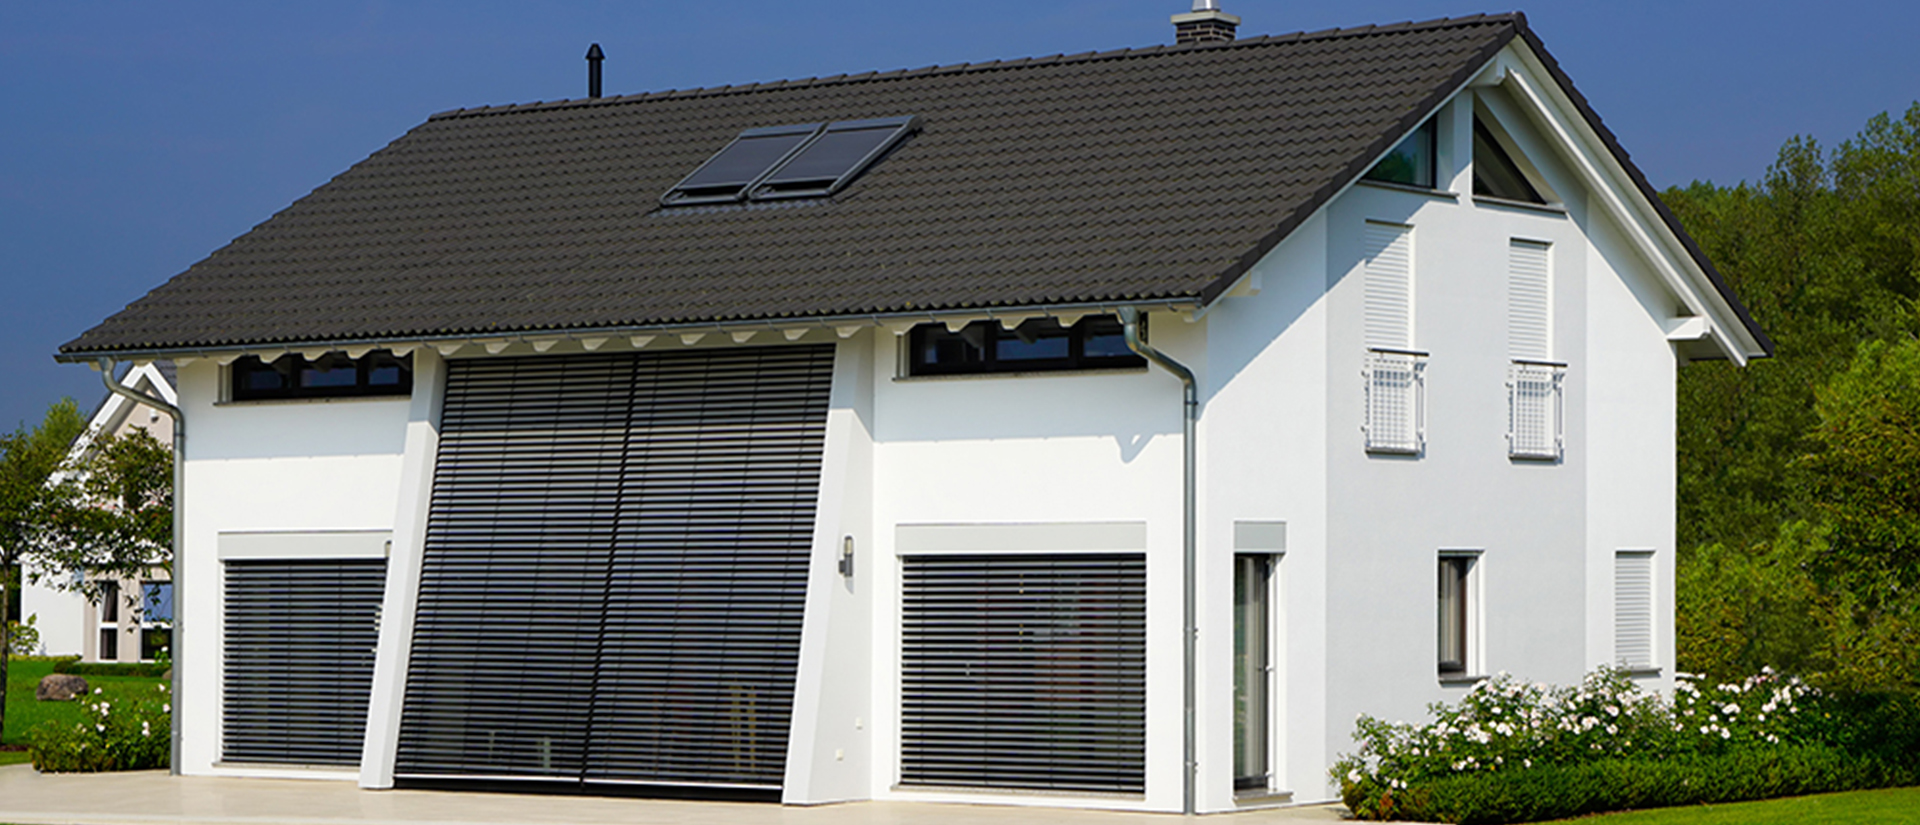 Herkenhoff Referenzen große Fensterfronten mit Sonnenschutz Rollläden 